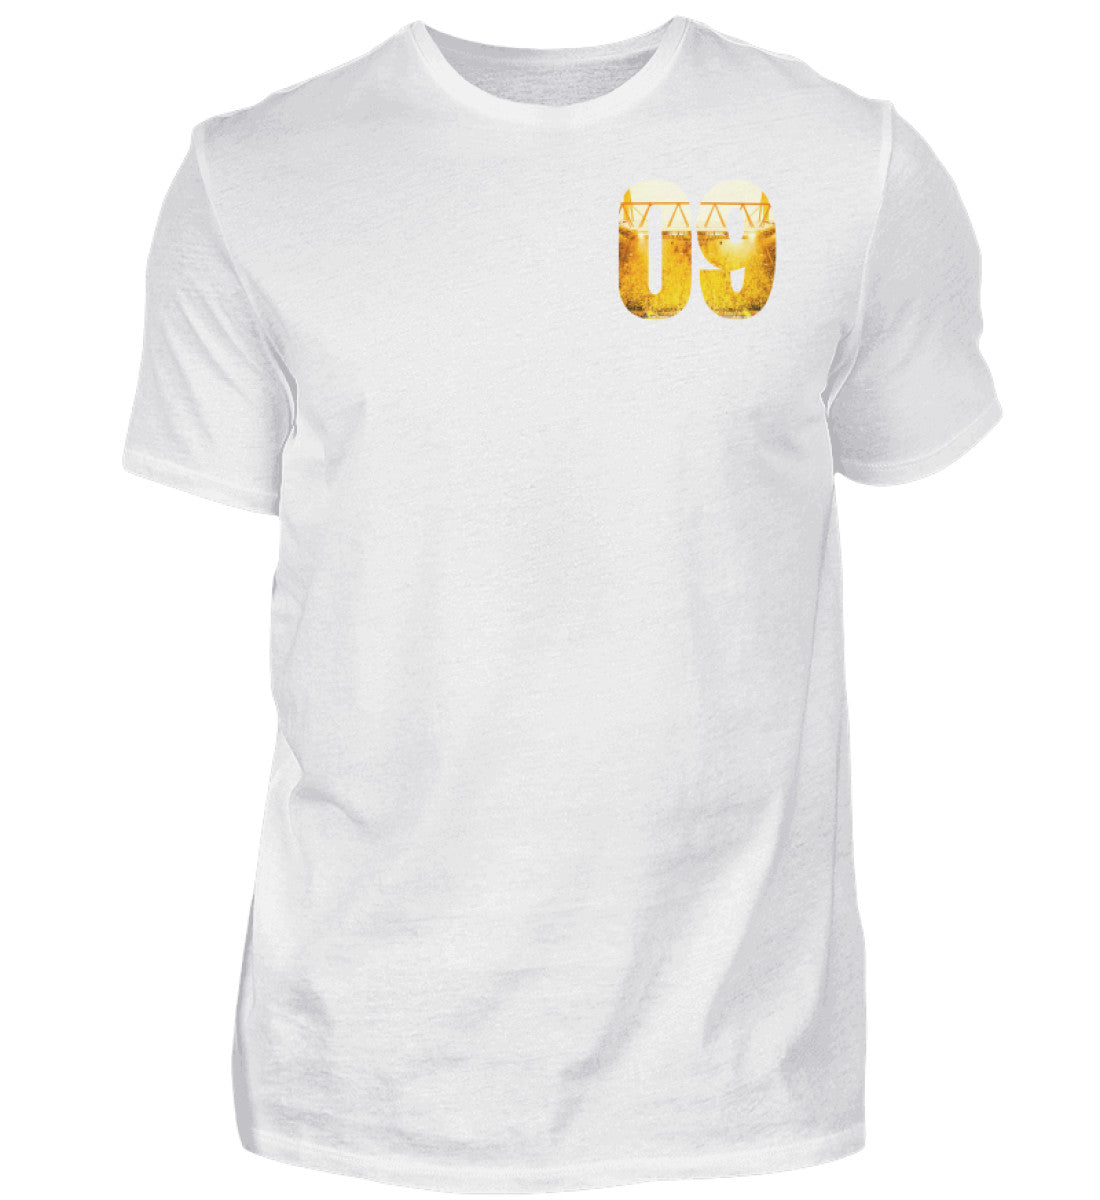 Die Süd - Unisex T-Shirt (derzeit nicht verfügbar)